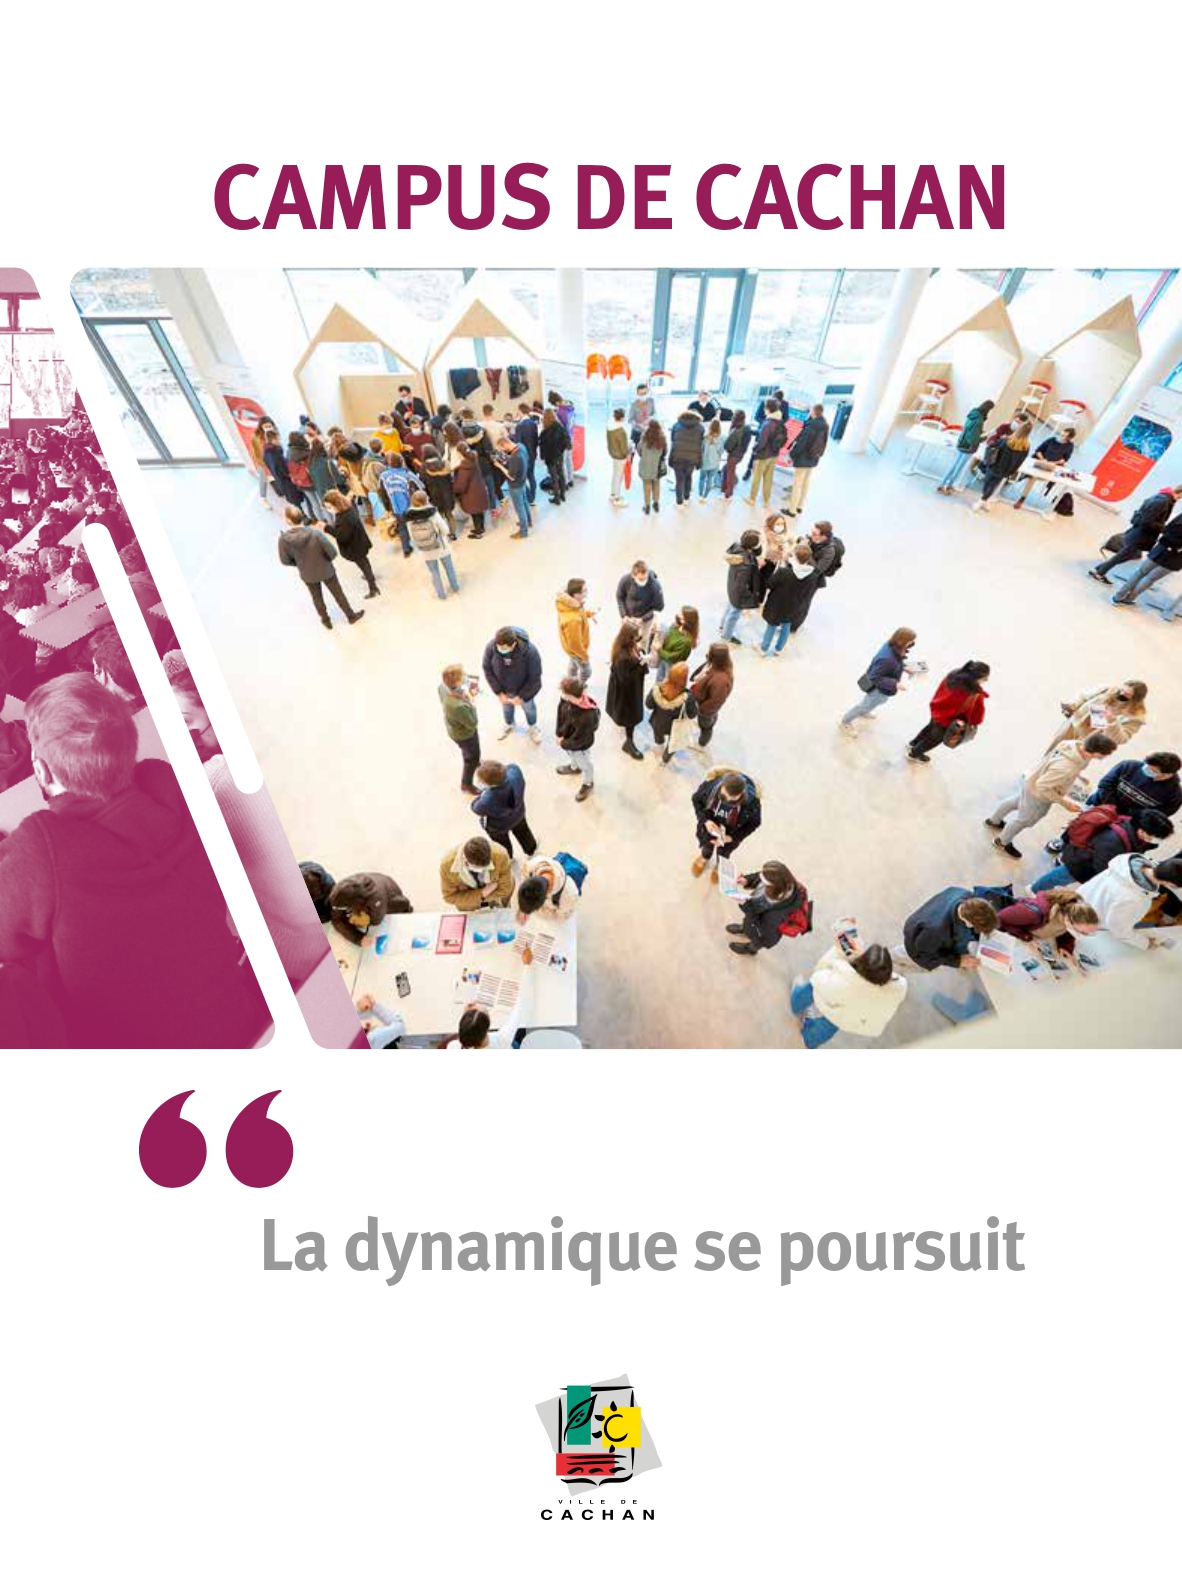 Campus Cachan, la dynamique se poursuit